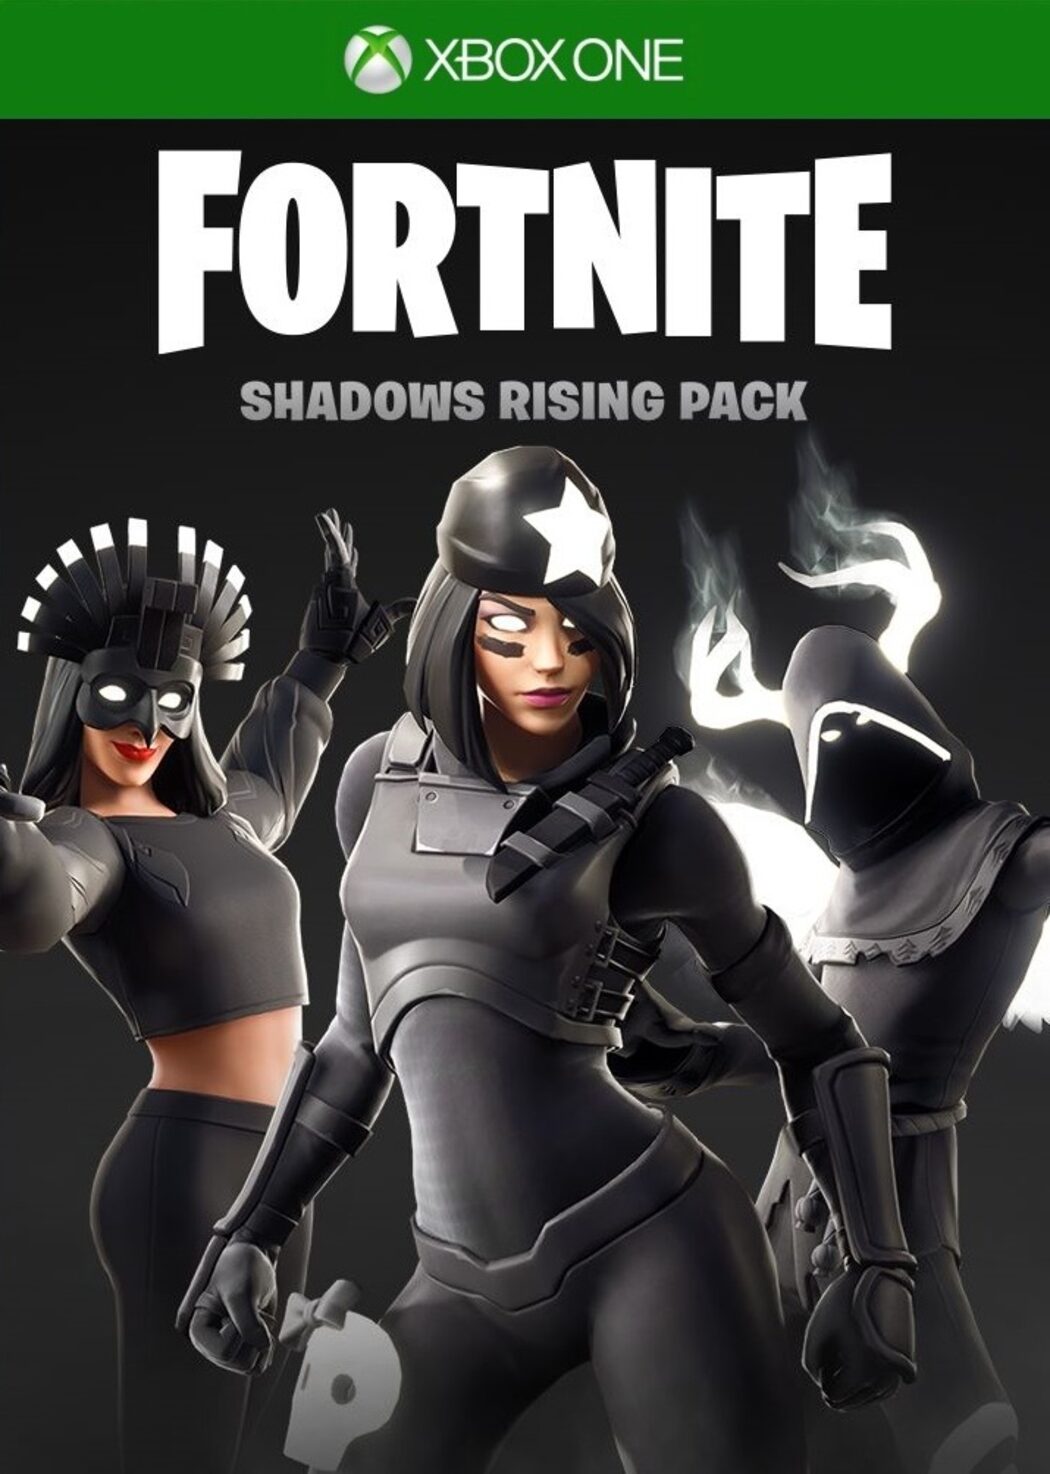 Shadow Pack Fortnite Buy Fortnite Shadows Rising Pack Xbox One Xbox Live Key Europe Eneba